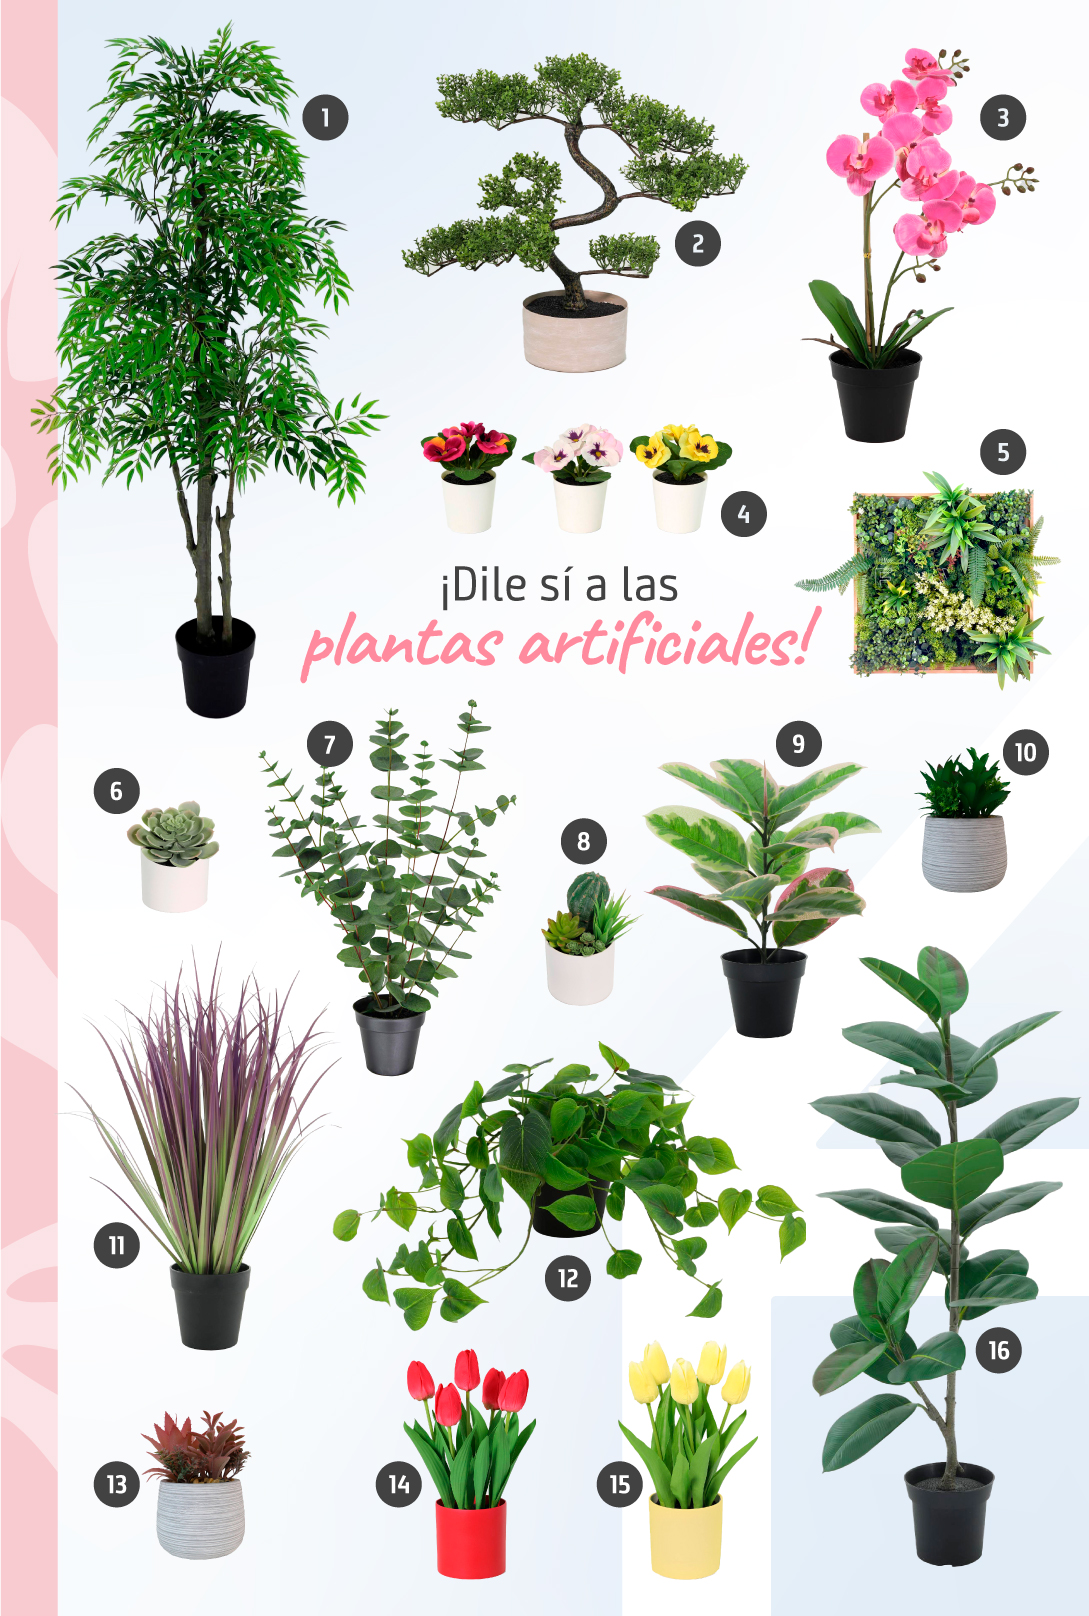 Moorboard de inspiración con 16 plantas y flores artificiales disponibles en Sodimac.